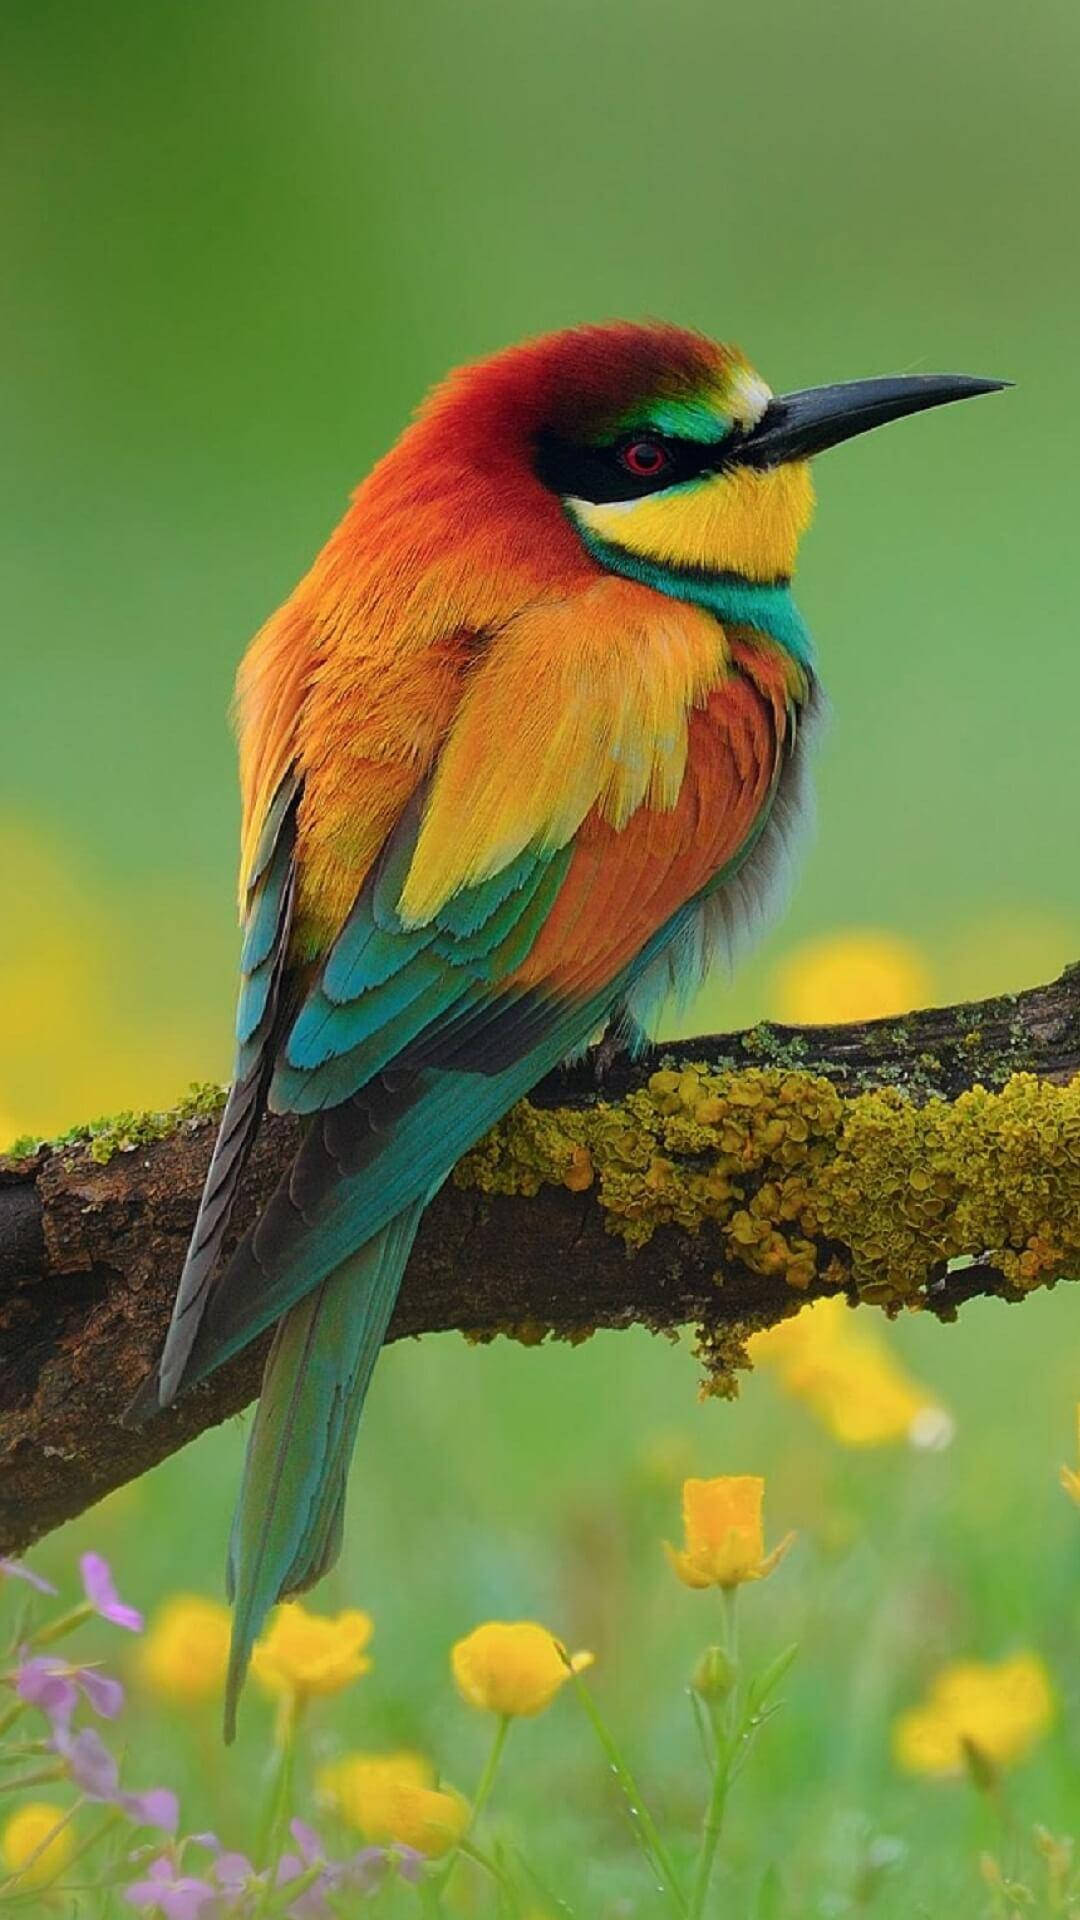 Yellow Bird With Sharp Beak Background